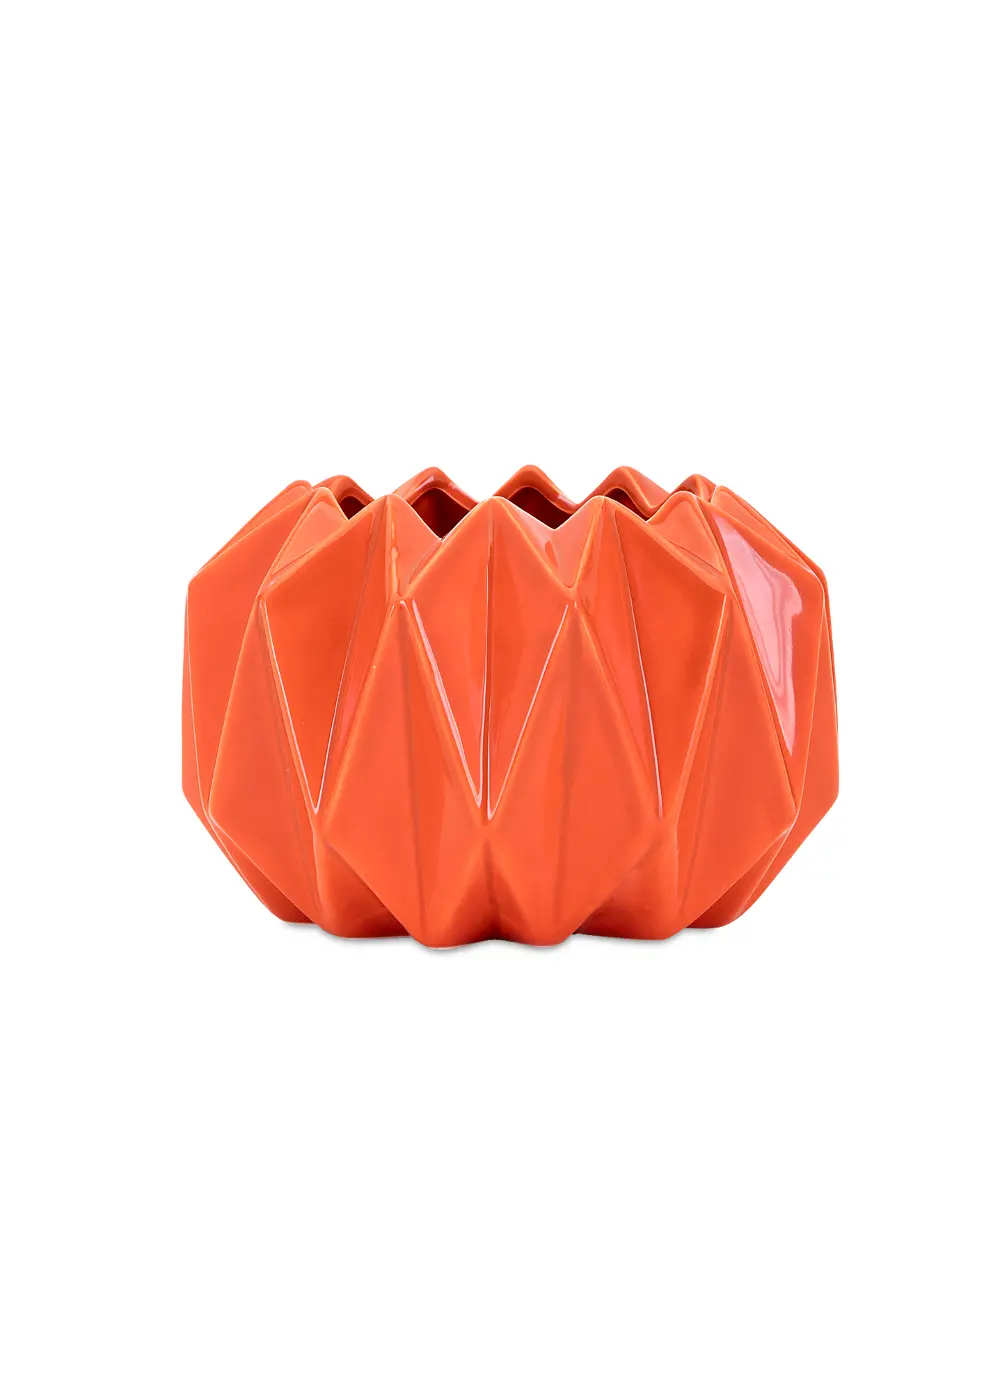 Orange Ceramic Vase-1